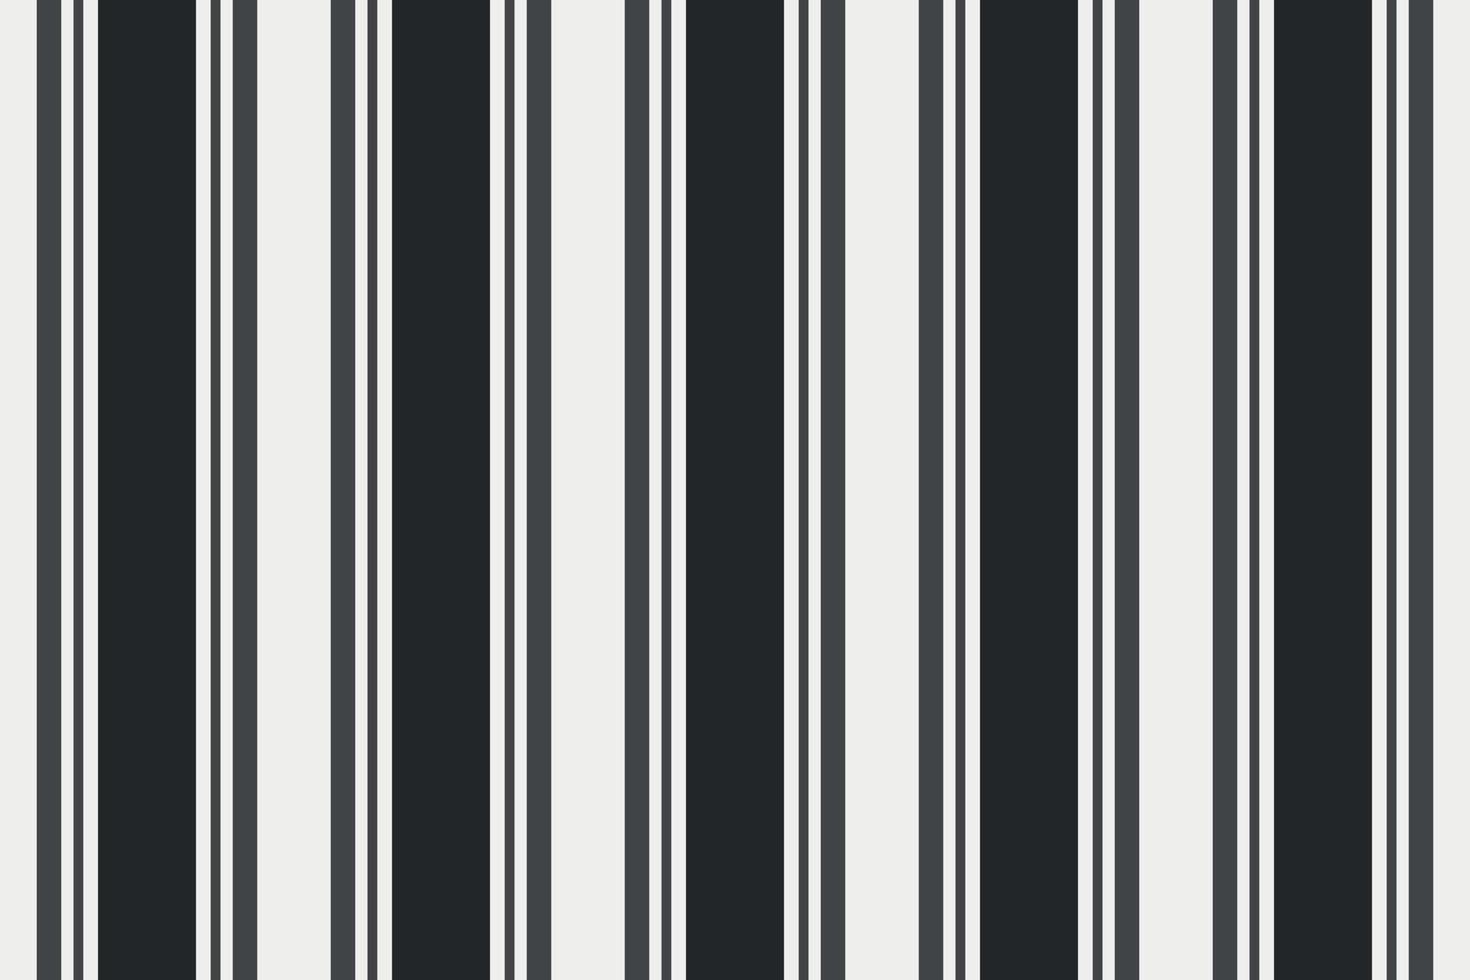 abstrakt svart och vit zebra randig bakgrund med linjer för utskrift av tapeter vektor